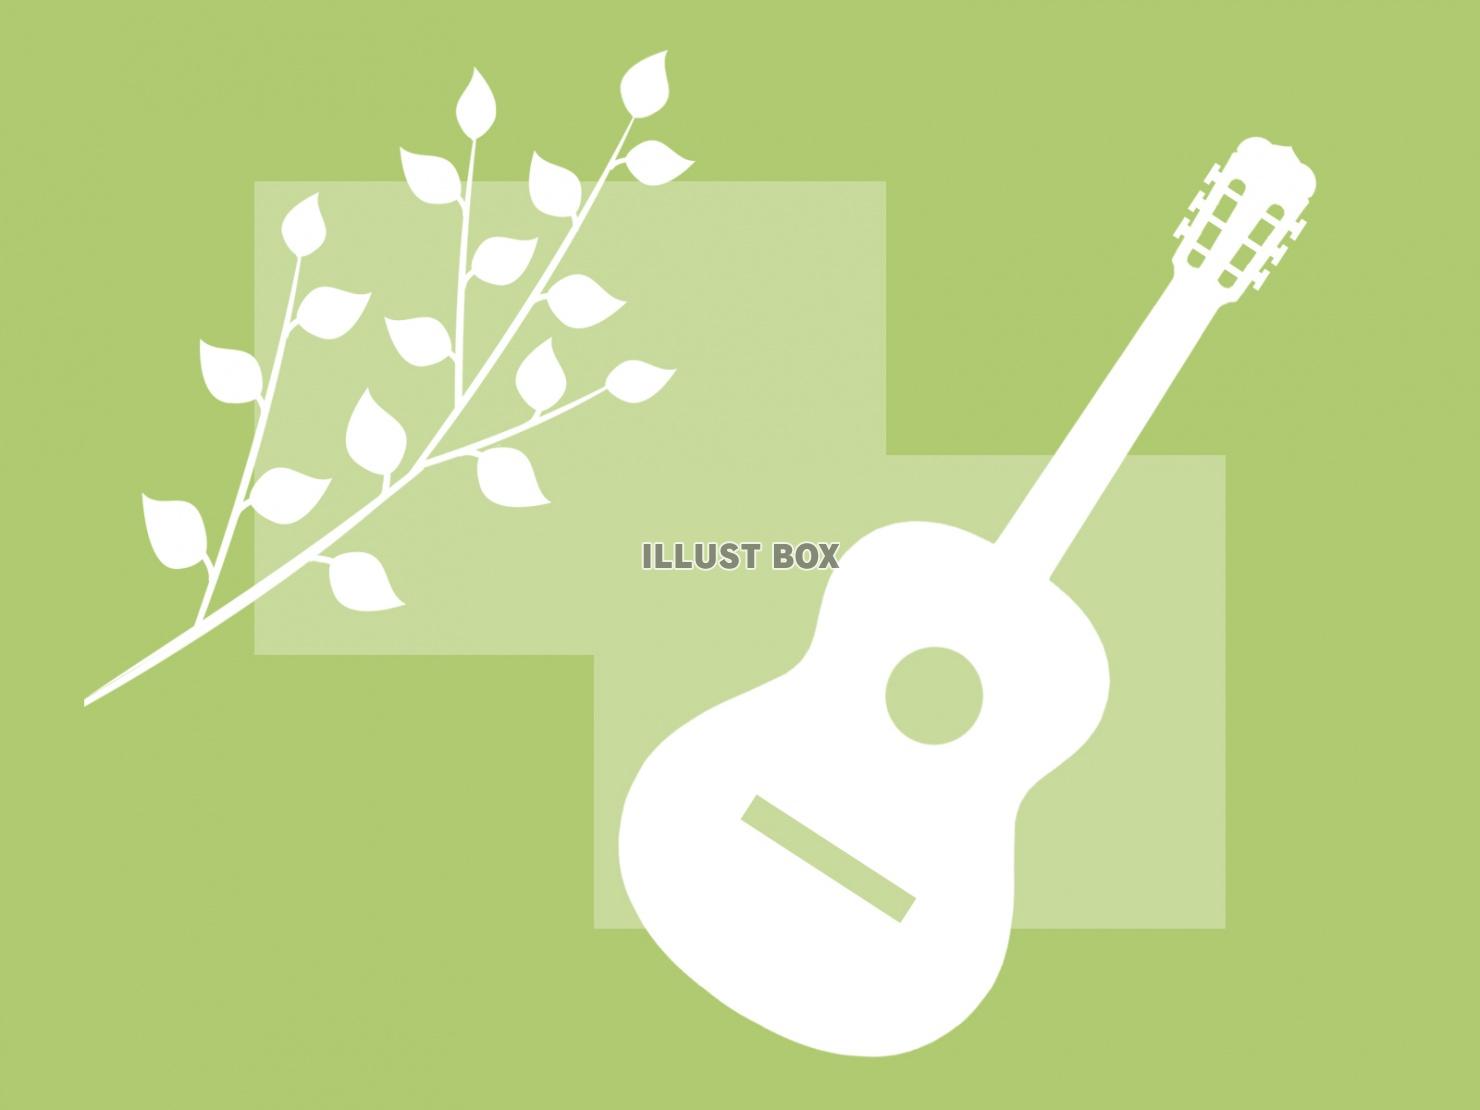 ギターと木の葉っぱの壁紙シンプル背景素材イラスト